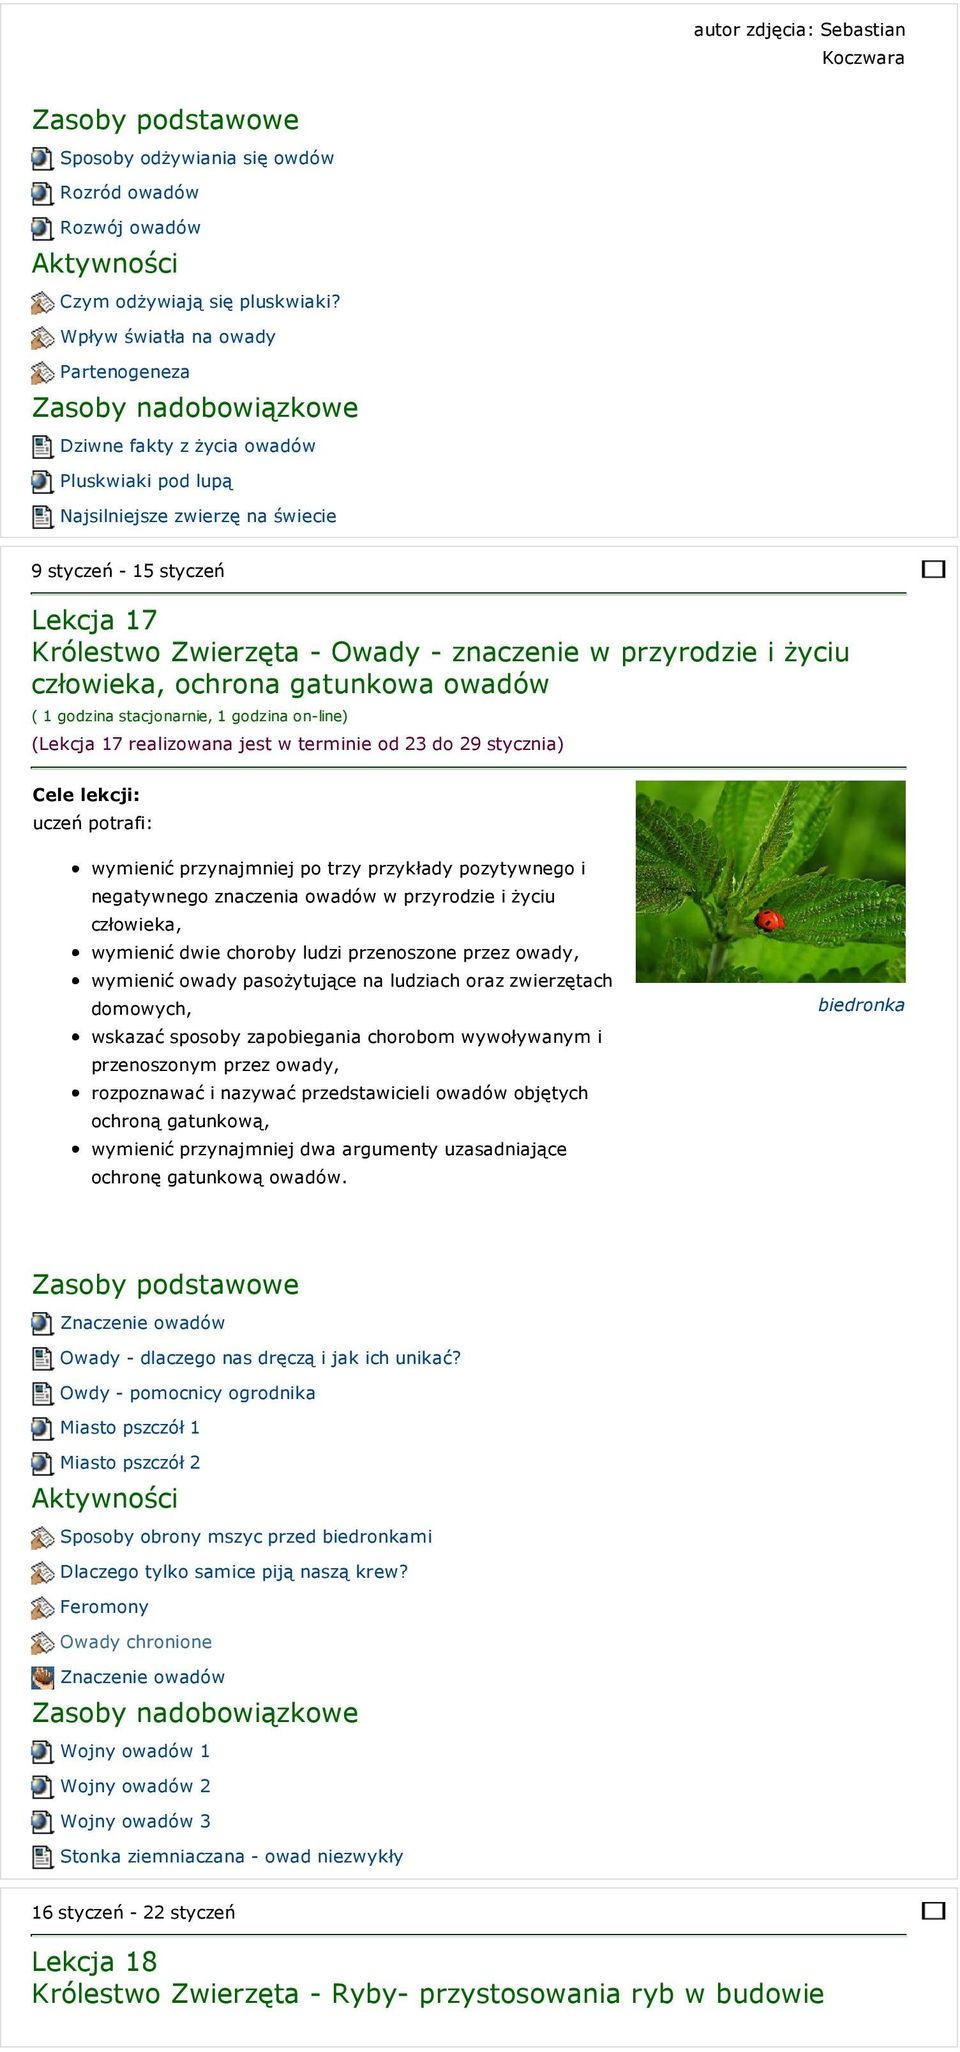 przyrodzie i życiu człowieka, ochrona gatunkowa owadów (Lekcja 17 realizowana jest w terminie od 23 do 29 stycznia) wymienić przynajmniej po trzy przykłady pozytywnego i negatywnego znaczenia owadów